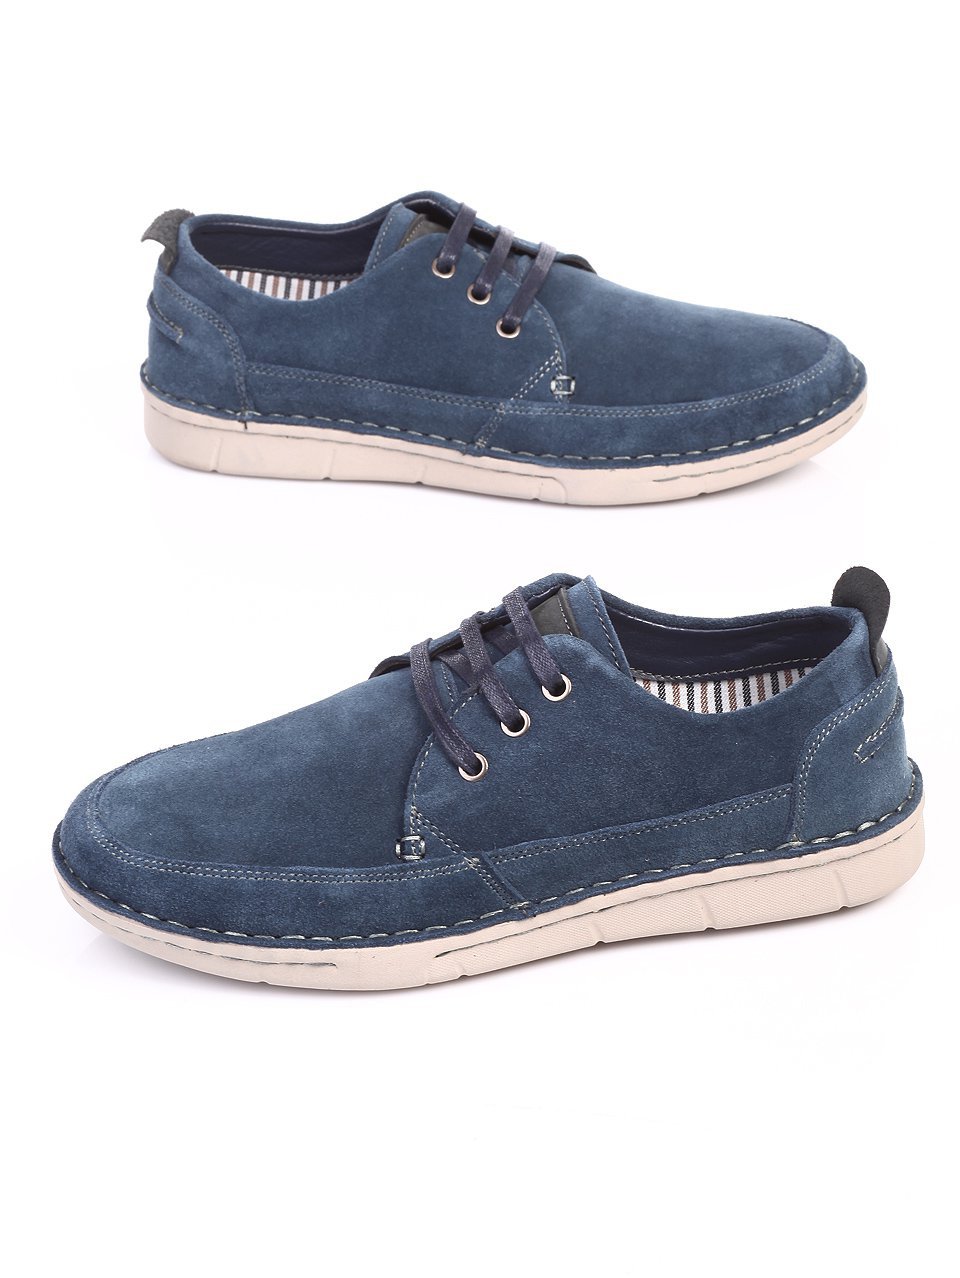 Ежедневни мъжки обувки от естествен велур в синьо 7N-17402 navy